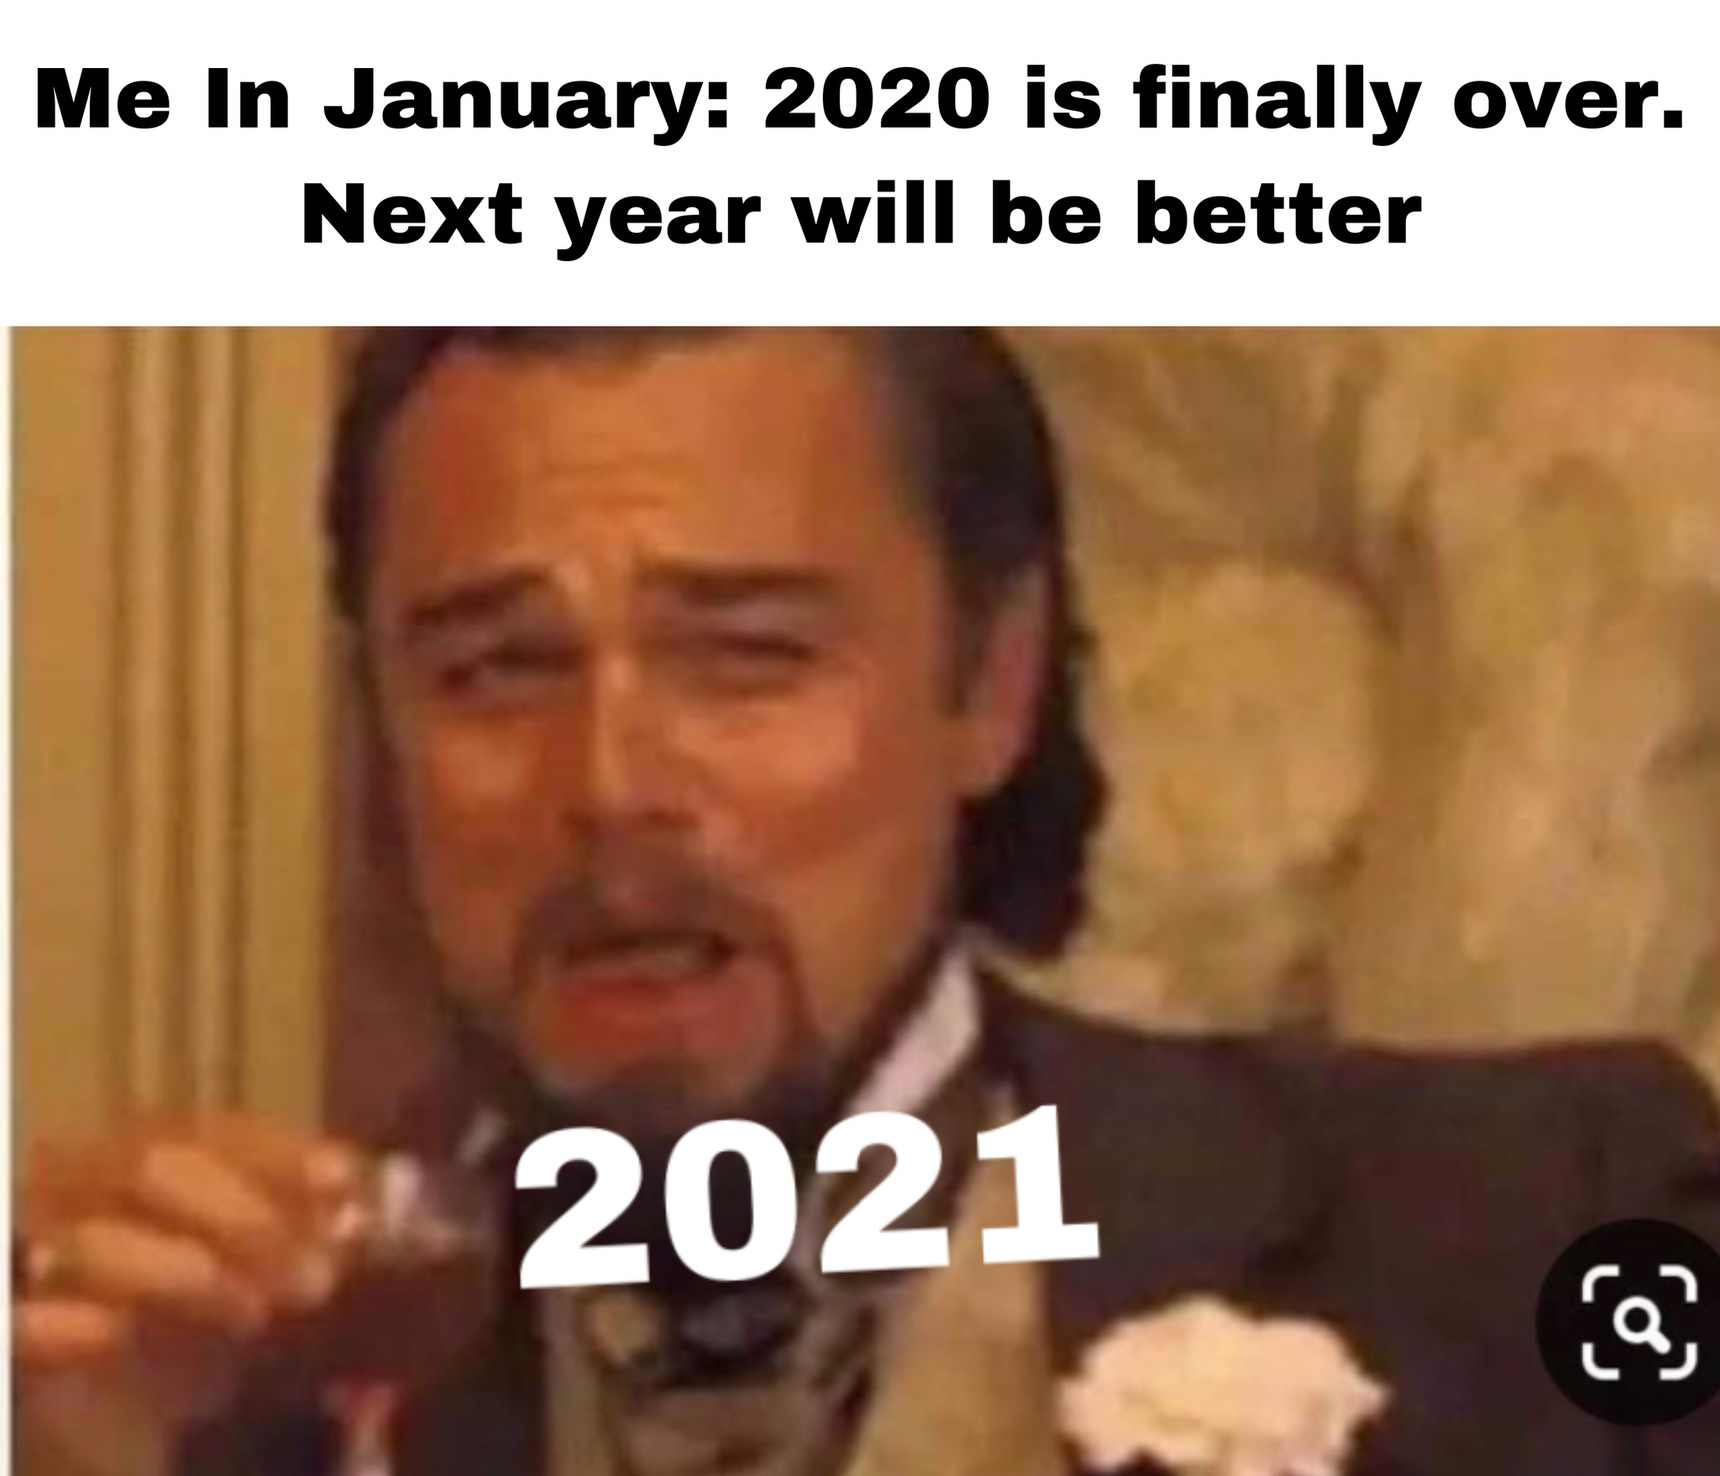 We’ll see what next year brings - meme